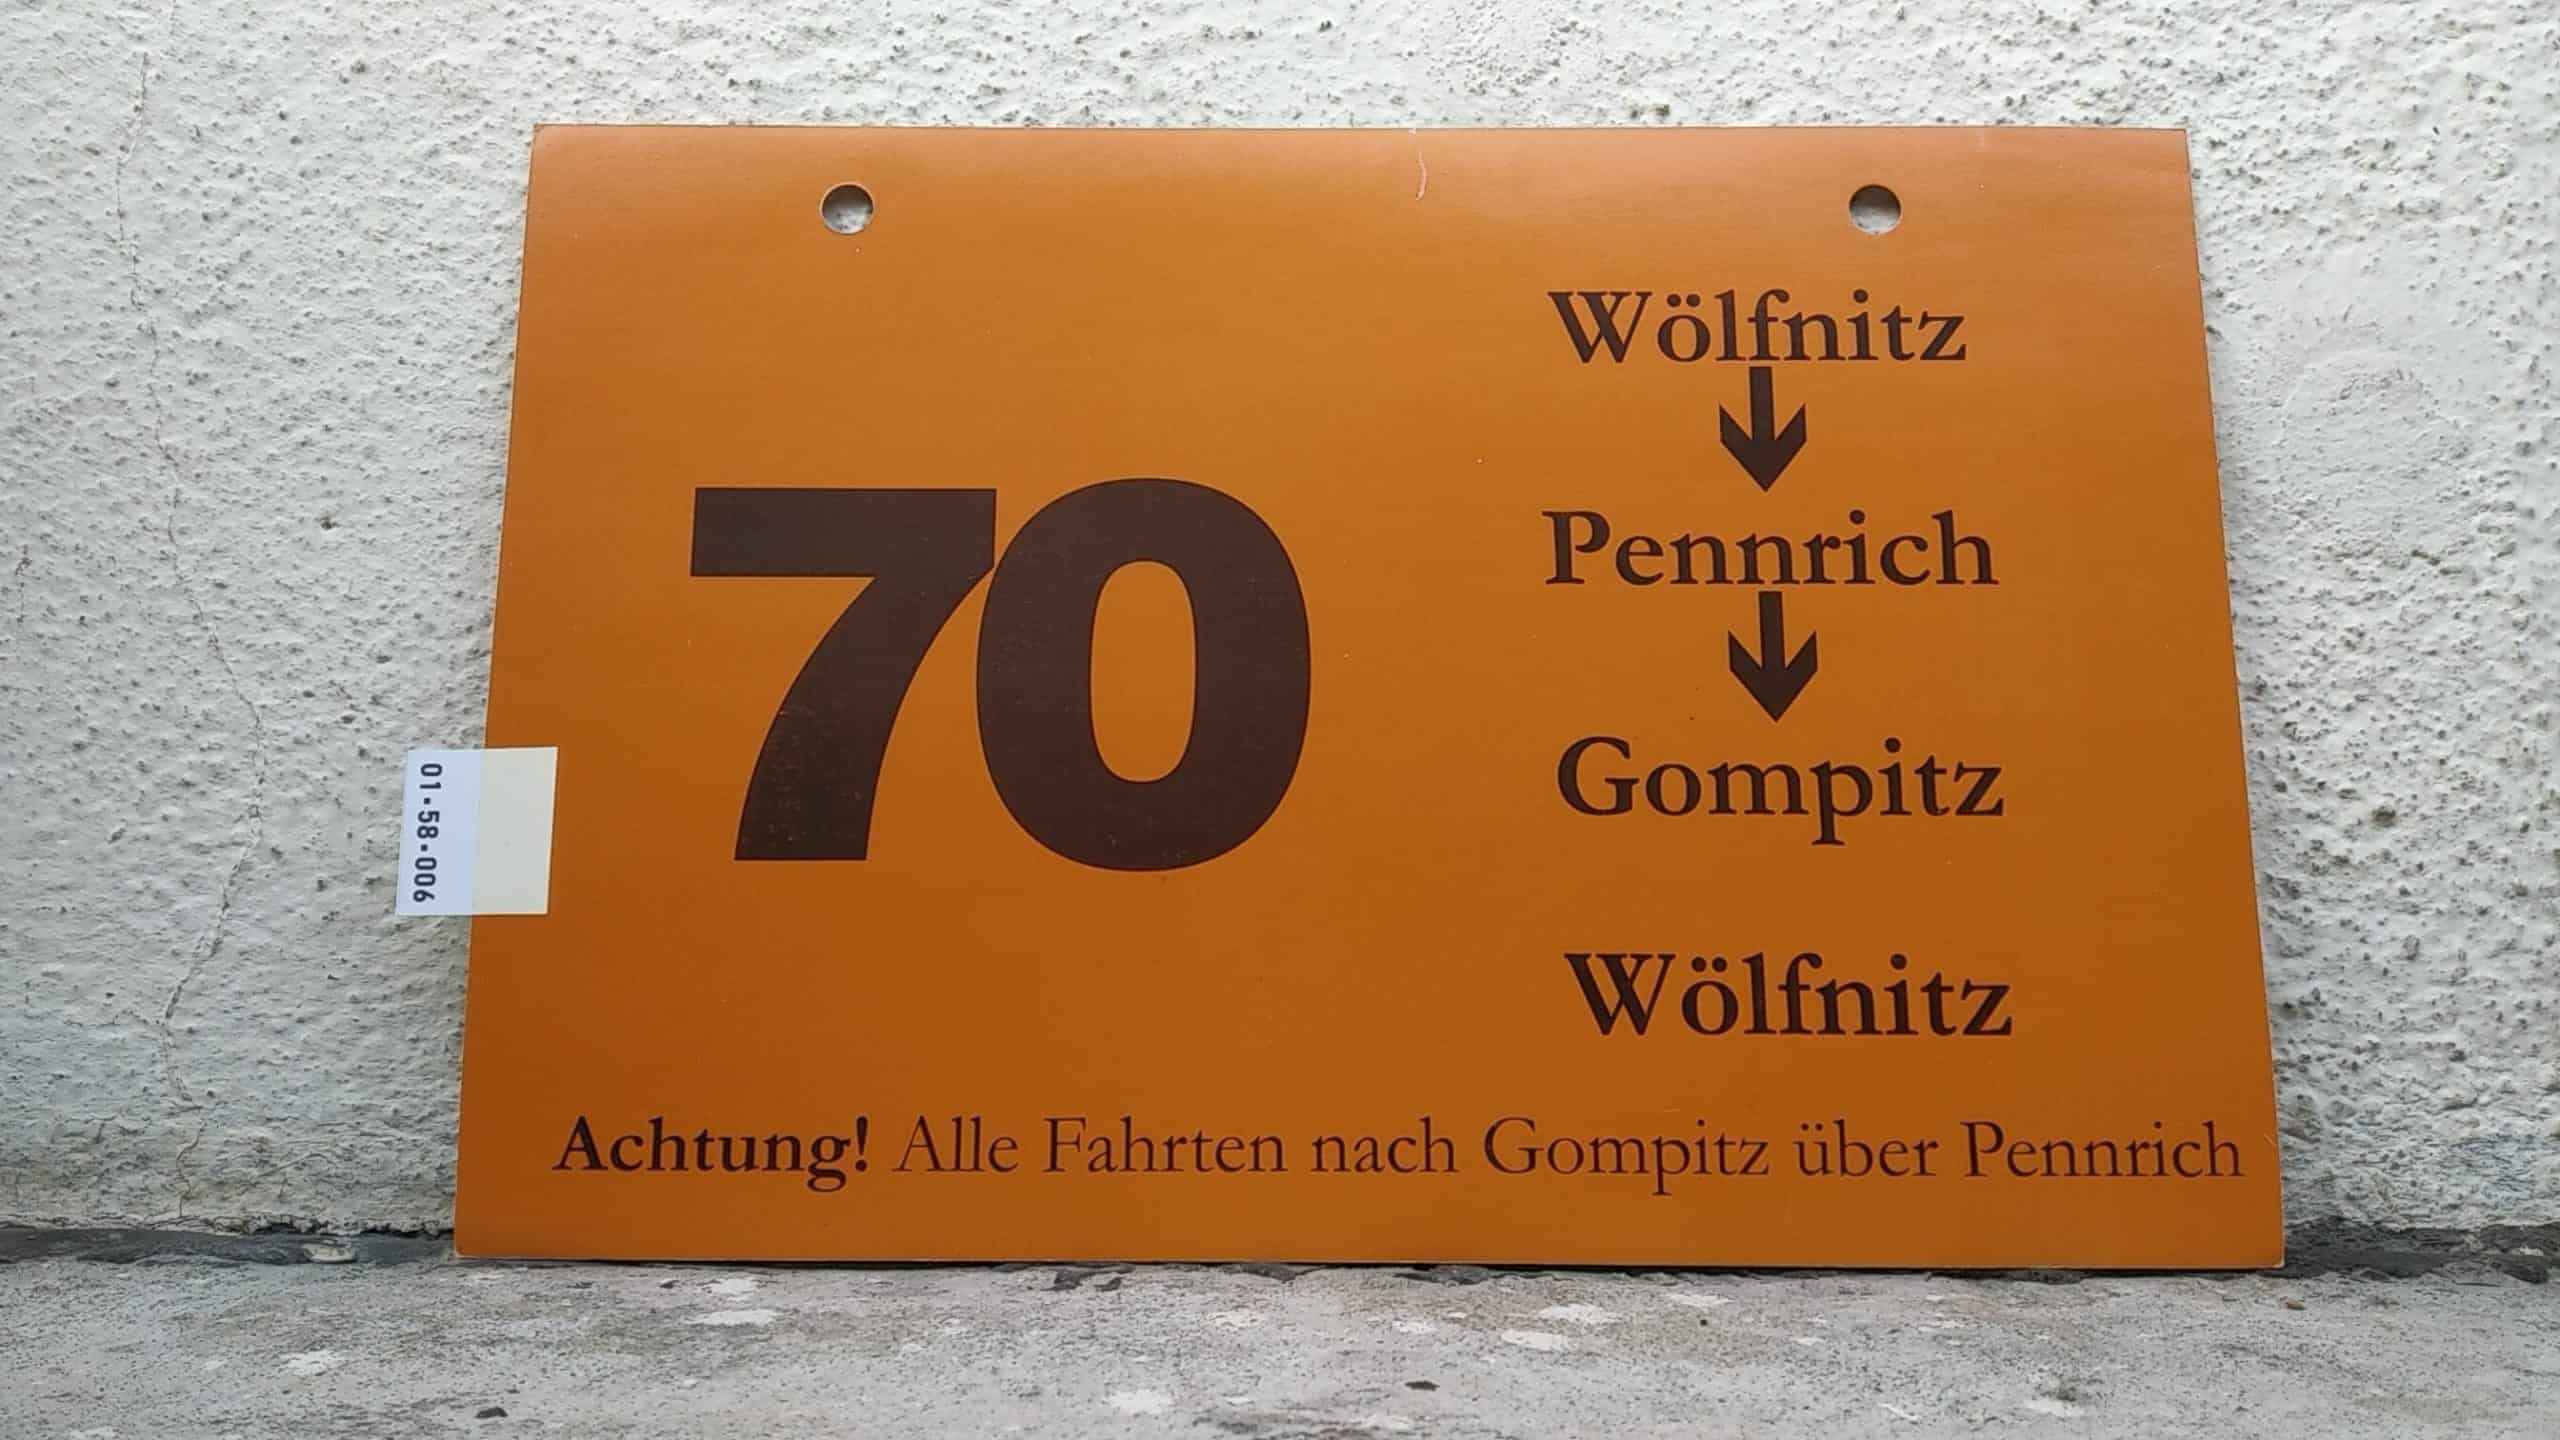 Ein seltenes Bus-Linienschild aus Dresden der Linie 70 von Wölfnitz nach Wölfnitz